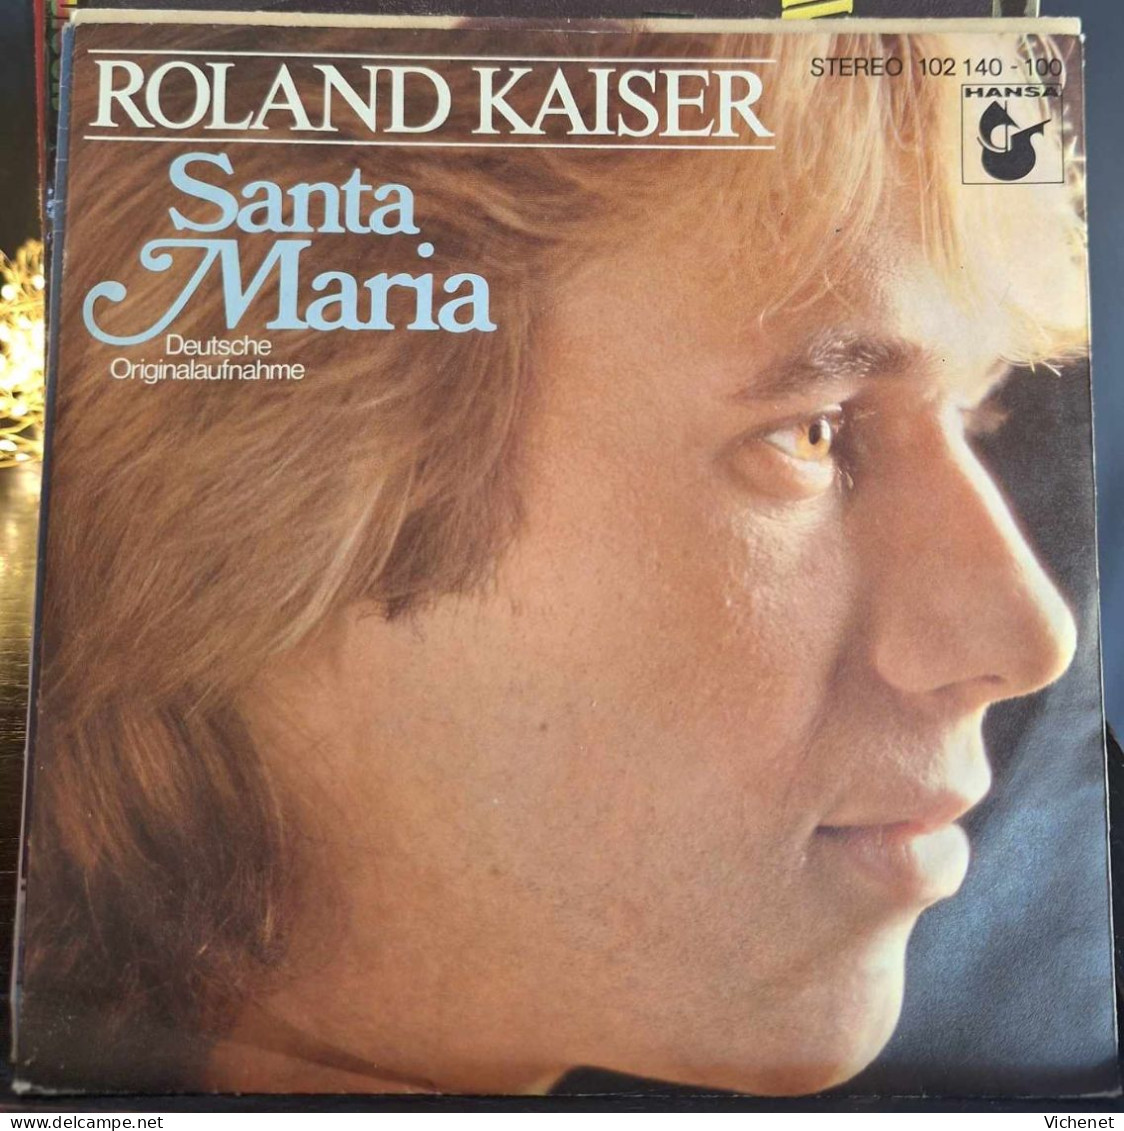 Roland Kaiser - Santa Maria - Sonstige - Deutsche Musik